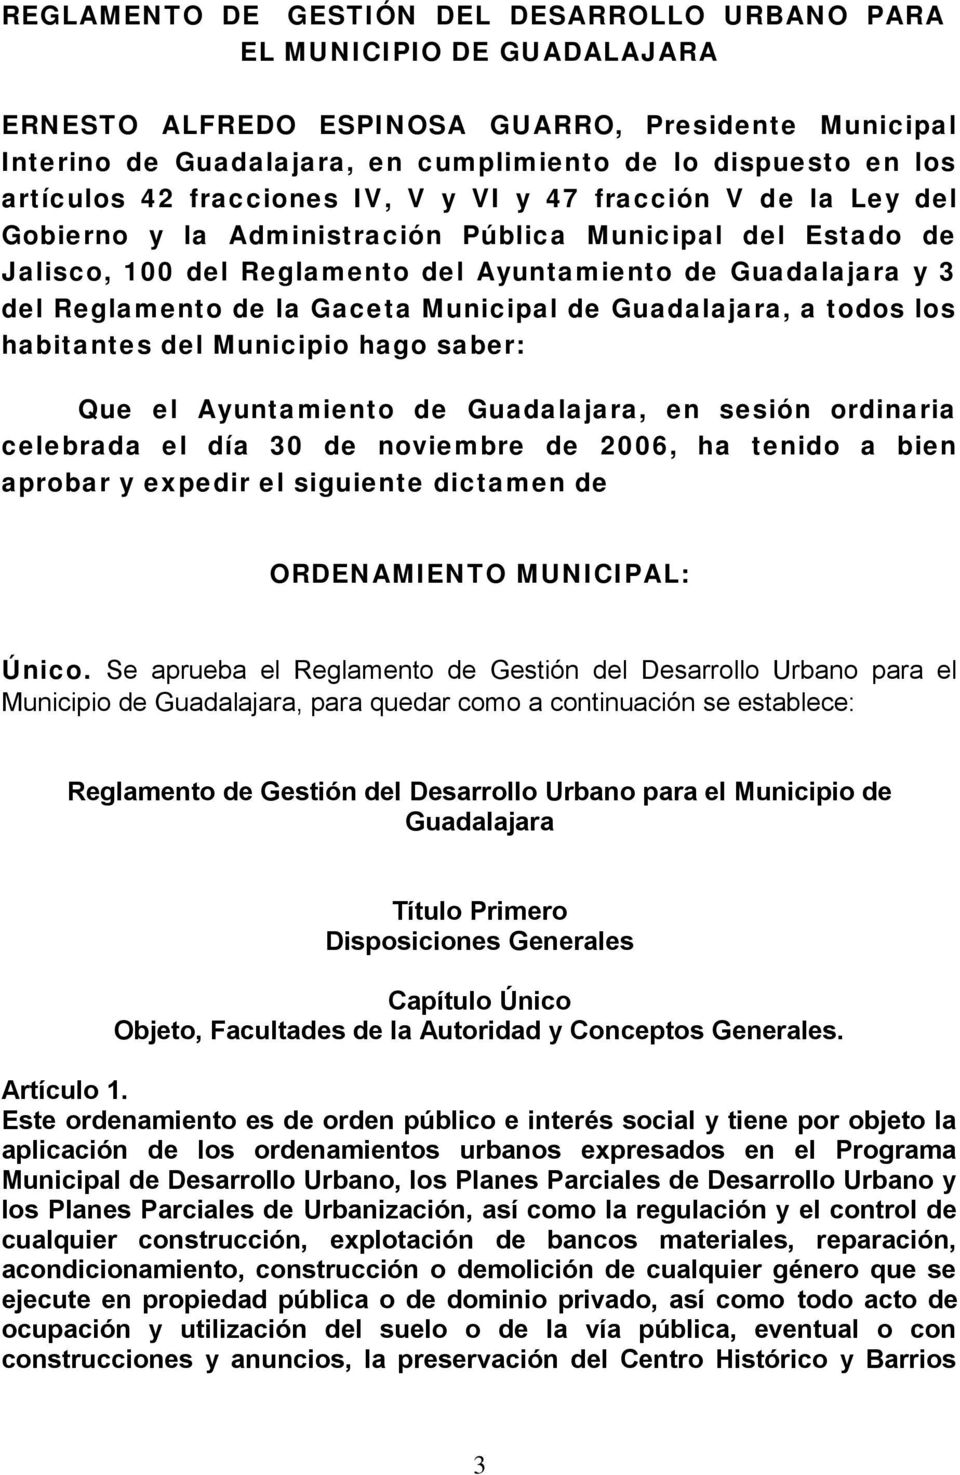 Reglamento de la Gaceta Municipal de Guadalajara, a todos los habitantes del Municipio hago saber: Que el Ayuntamiento de Guadalajara, en sesión ordinaria celebrada el día 30 de noviembre de 2006, ha